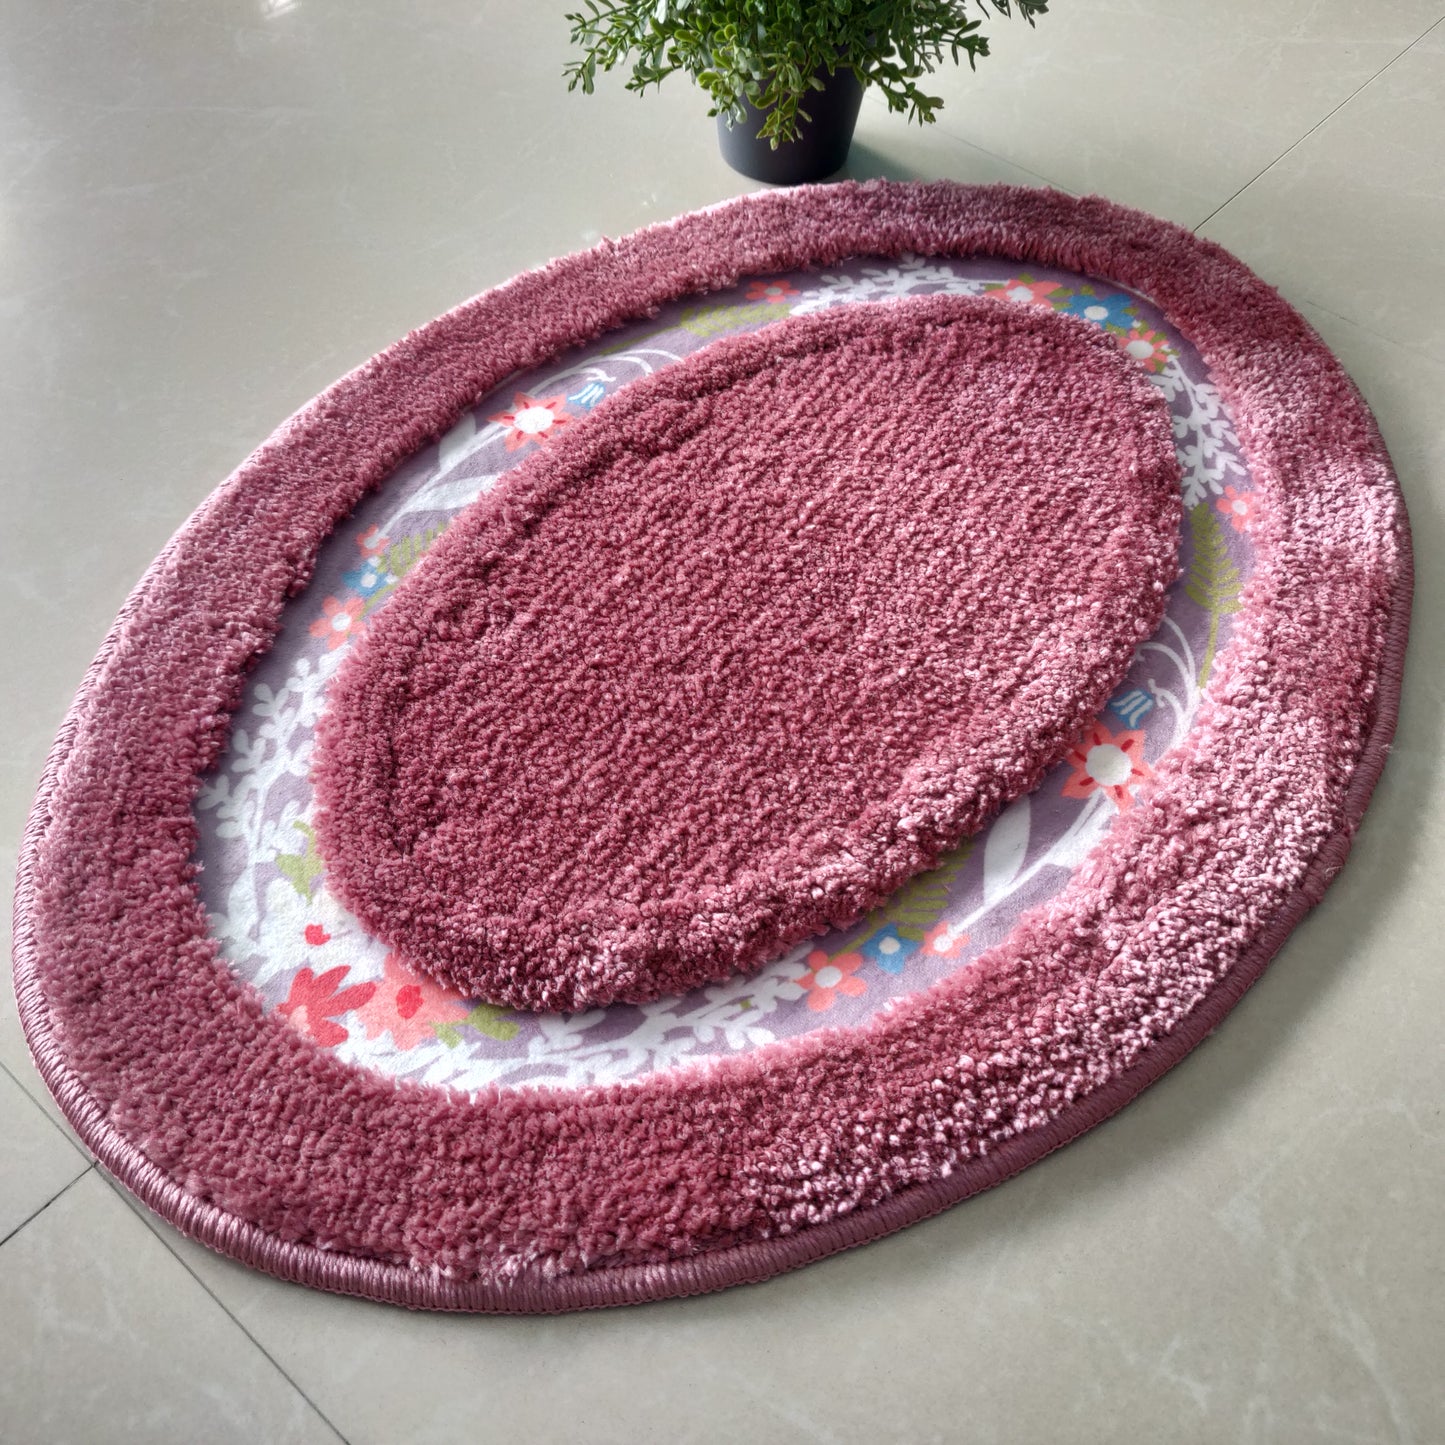 Avioni Home| Zengrove Floormat Collection | Soft Shaggy Oval Shape Floor mat /Door Mat | Wine Pink | Fluffy & 10mm Thick Mat | 40 x 60 CM